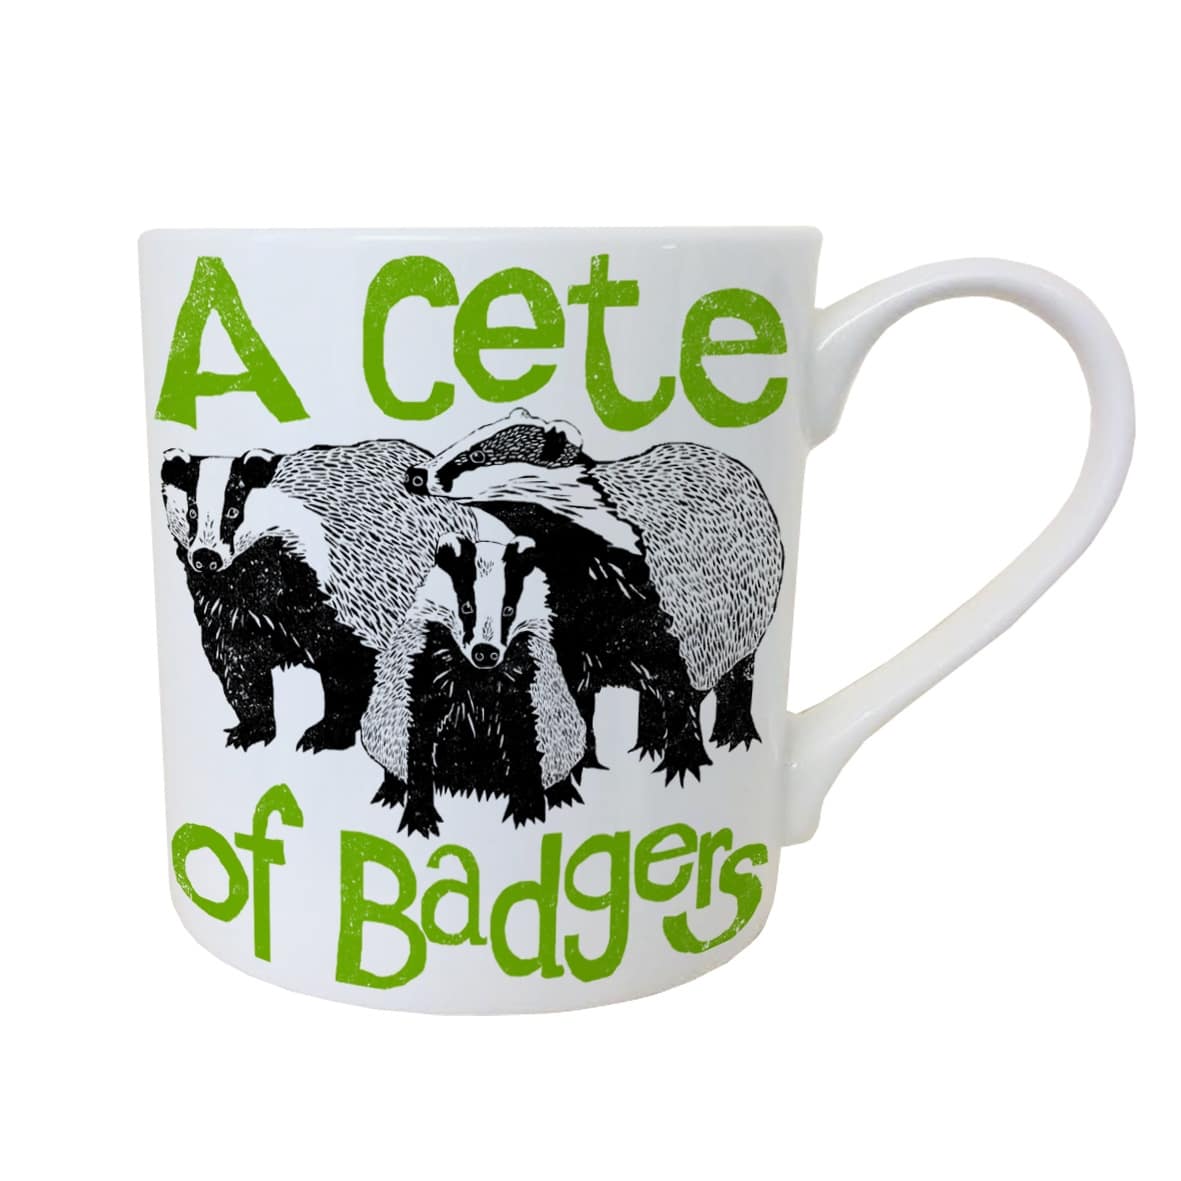 Cete of Badgers mug